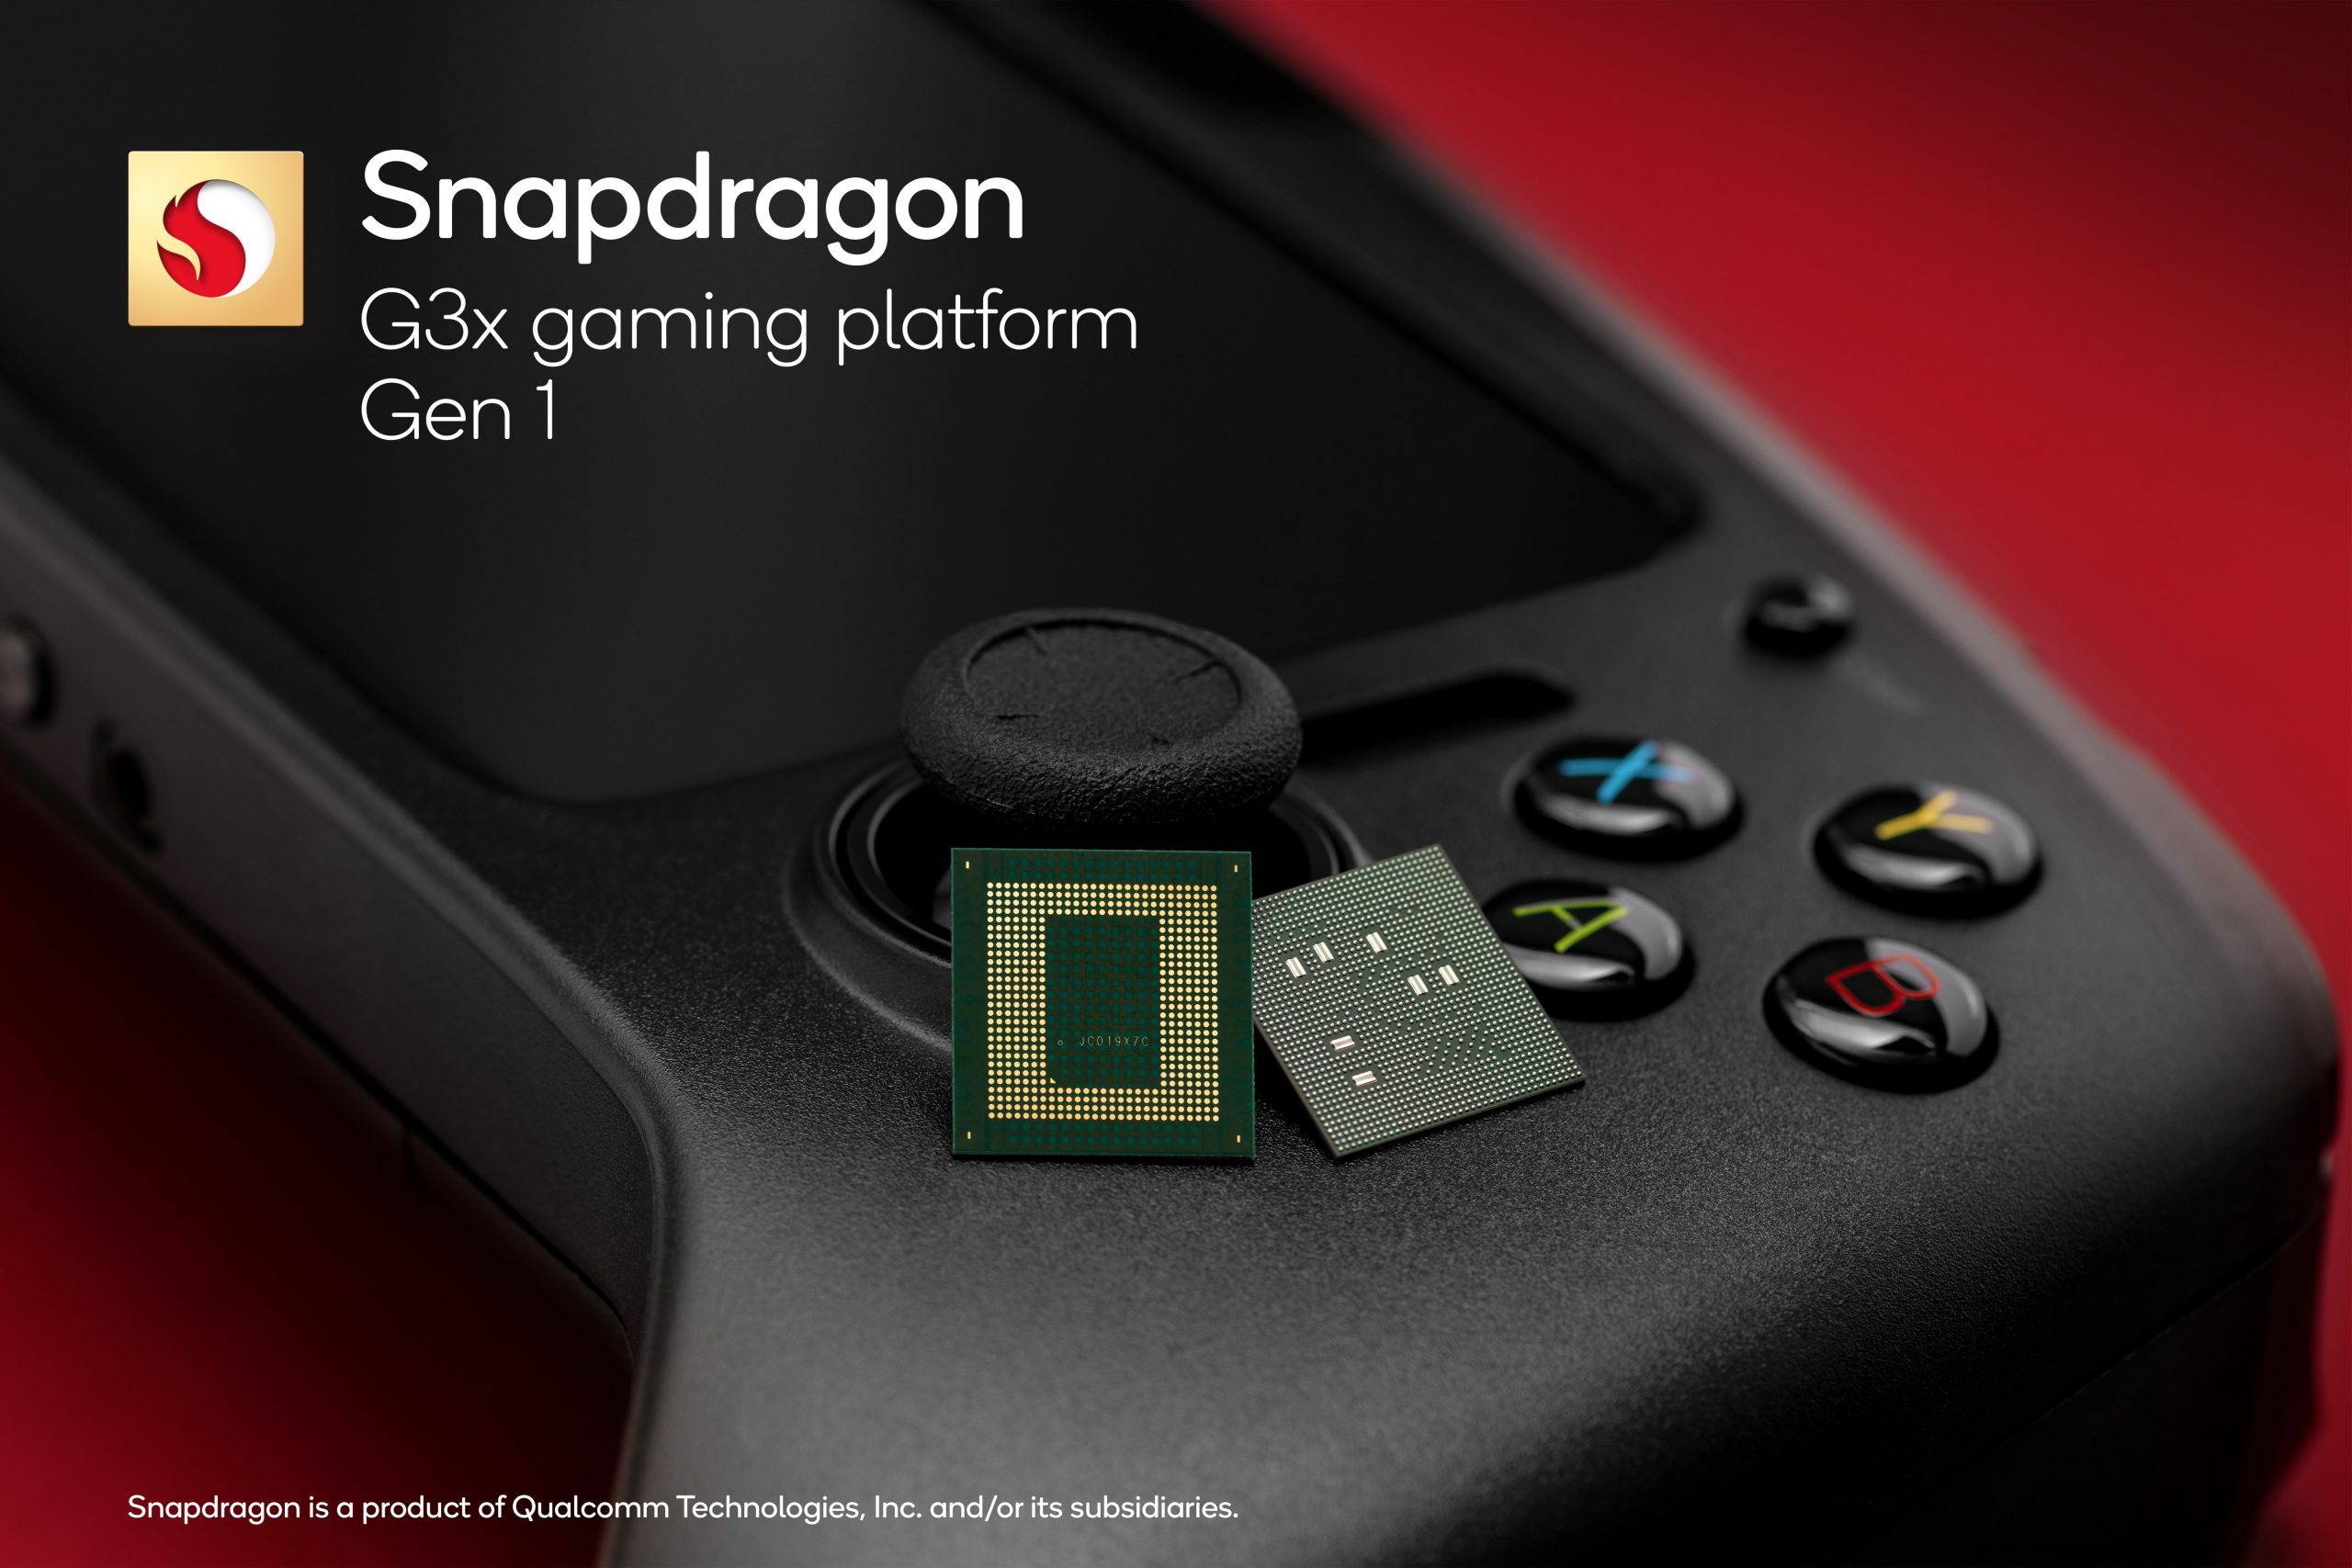 Qualcomm giới thiệu chipset gaming Snapdragon G3x Gen 1 dành cho thiết bị chơi game chuyên dụng thế hệ mới